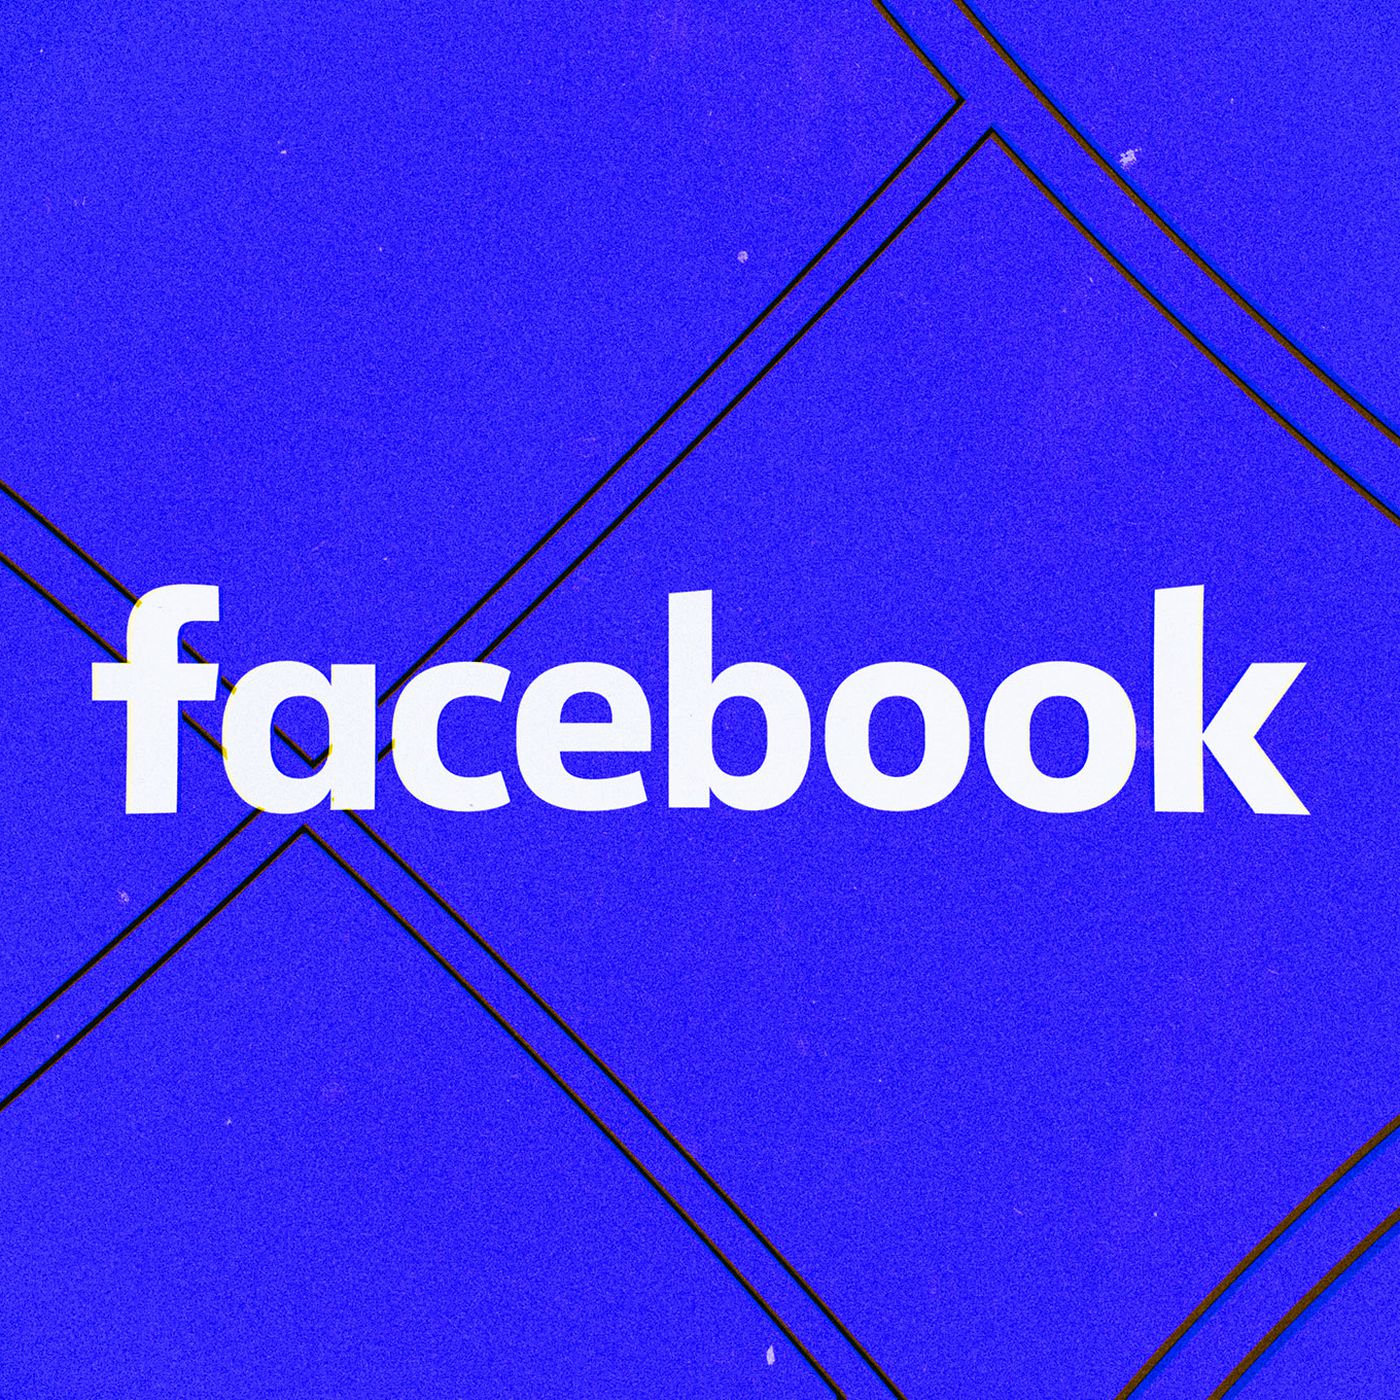 Facebook aggiorna lo strumento per il trasferimento dei dati personali: più controllo per gli utenti (foto)